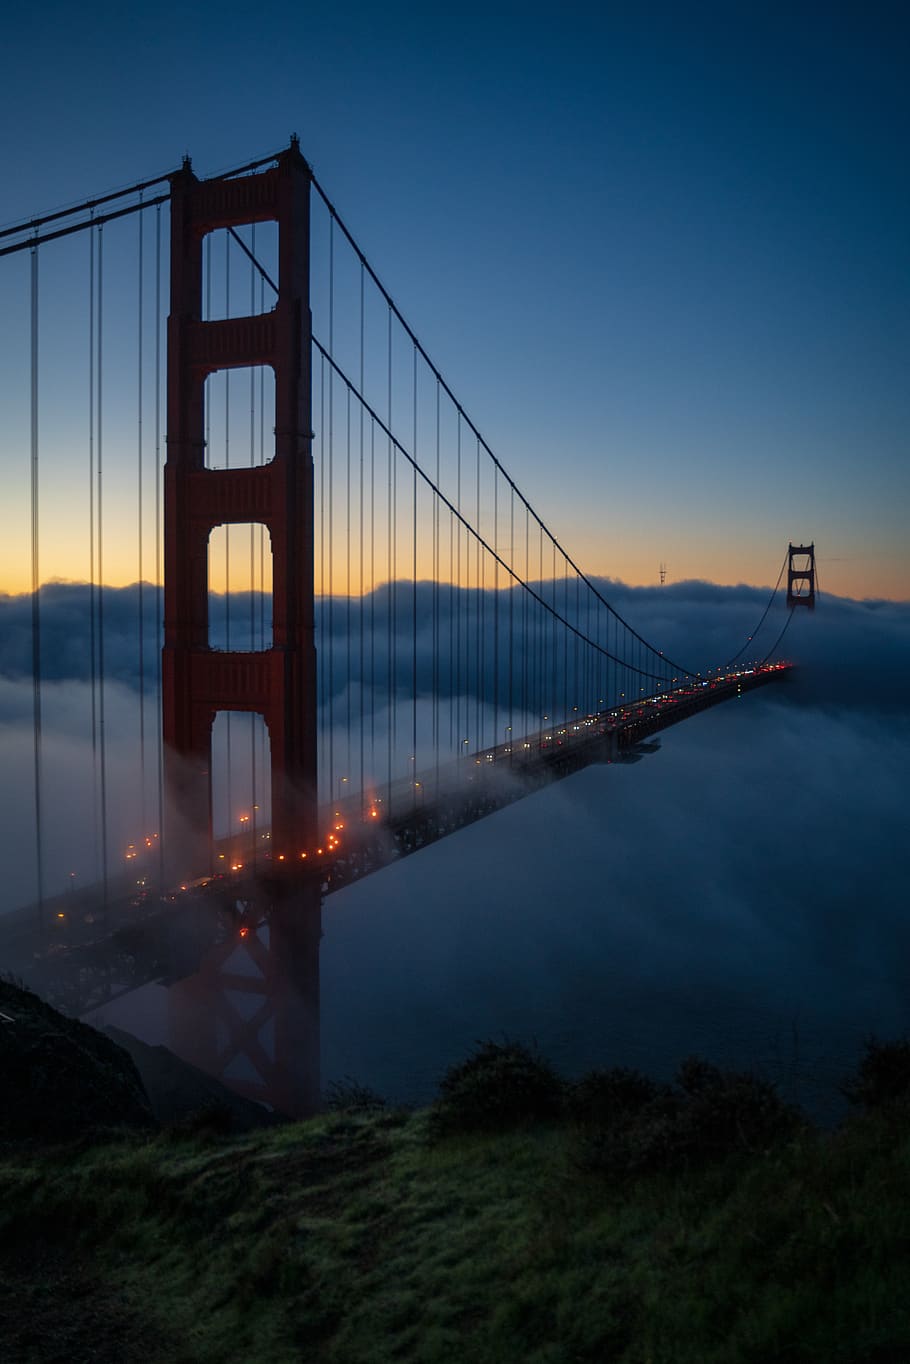 HD wallpaper: Golden Gate bridge at